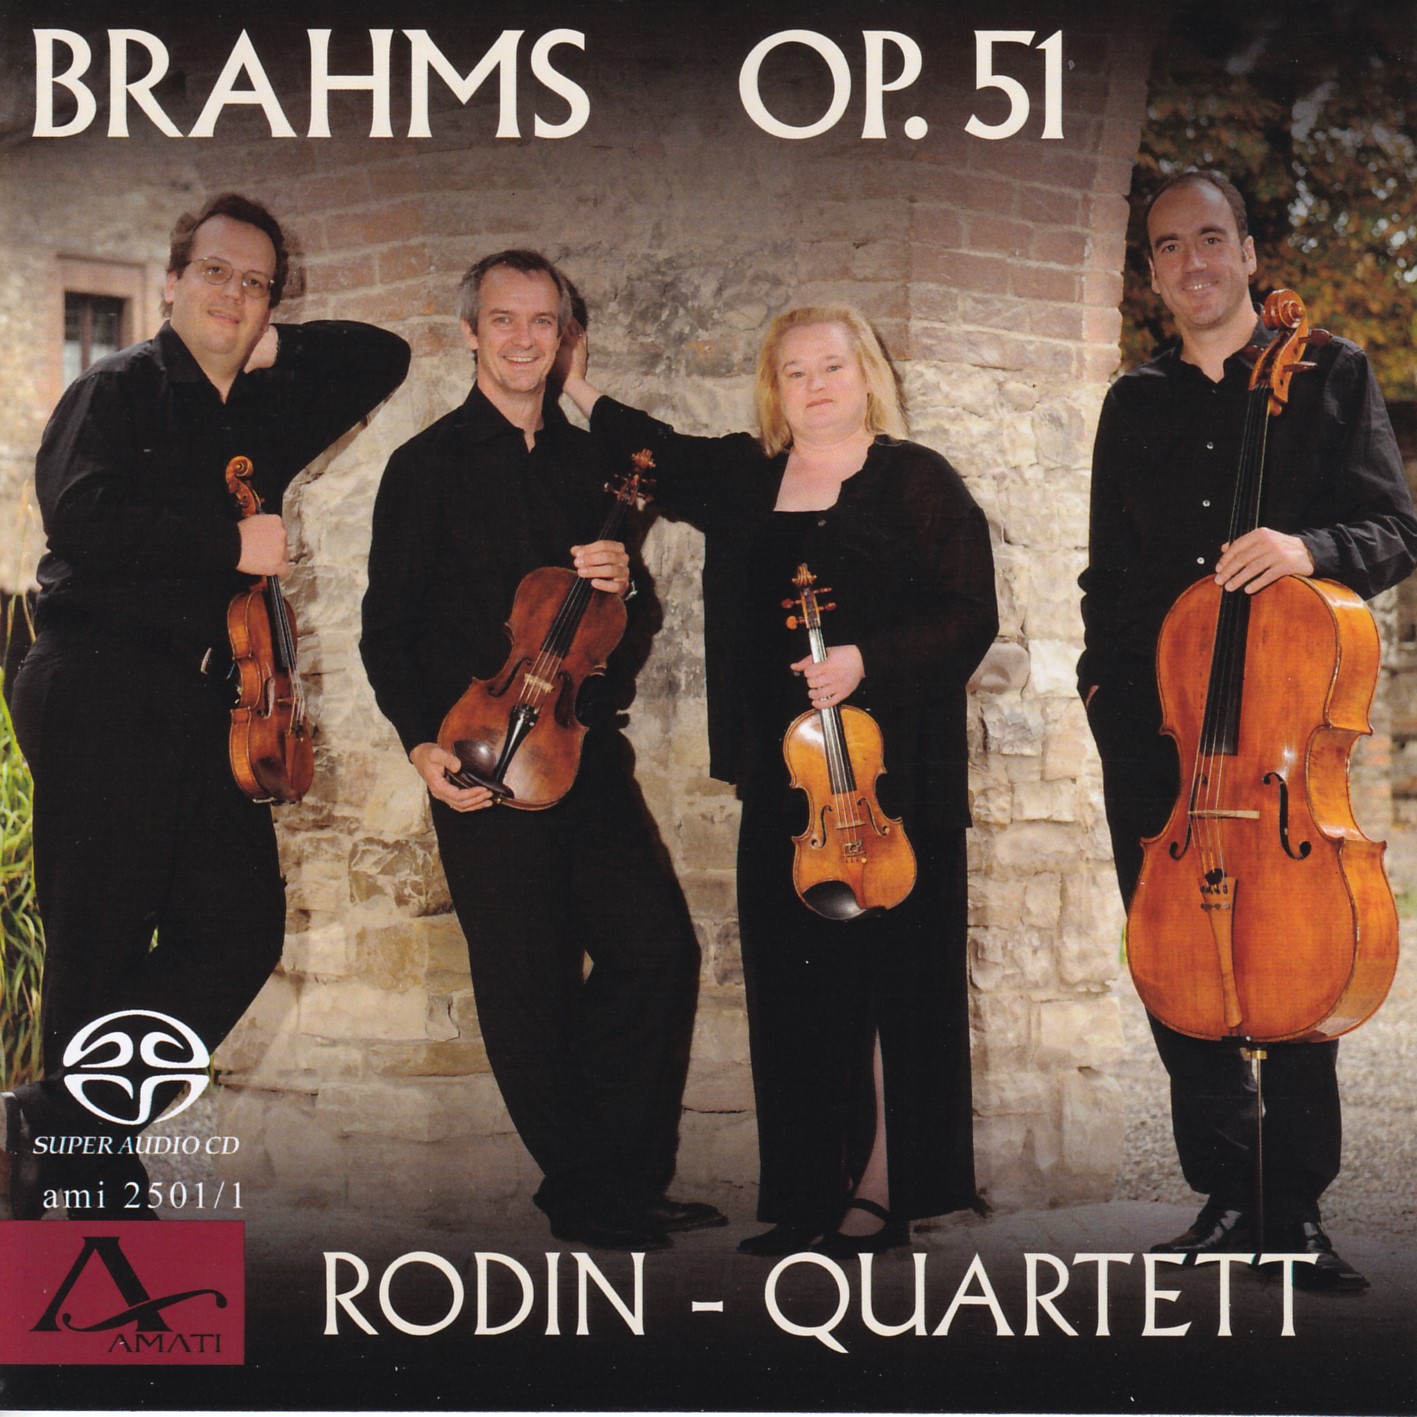 RODIN-QUARTETT - Brahms Op.51